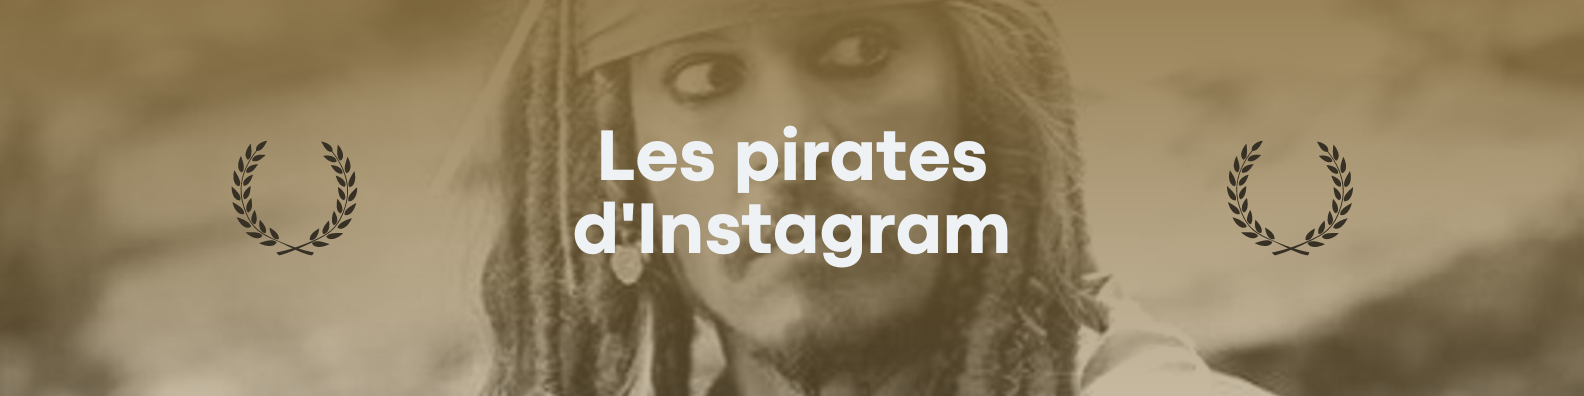 Pirate d'instagram - les hackers de réseaux sociaux